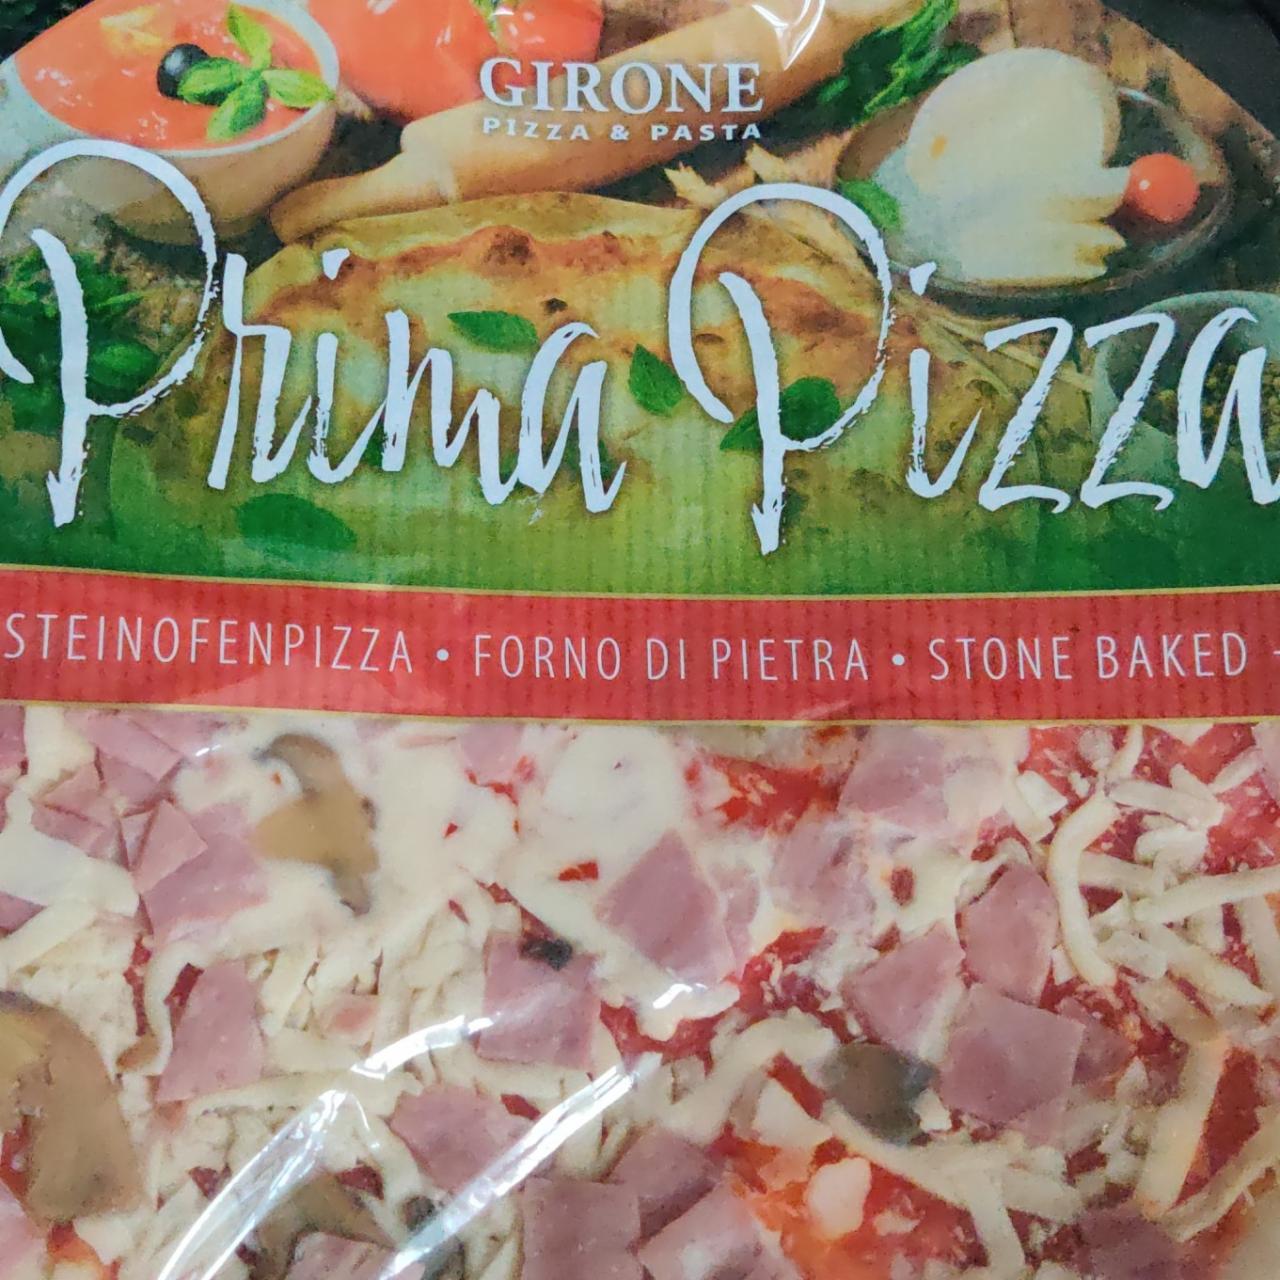 Zdjęcia - Prima pizza Girone